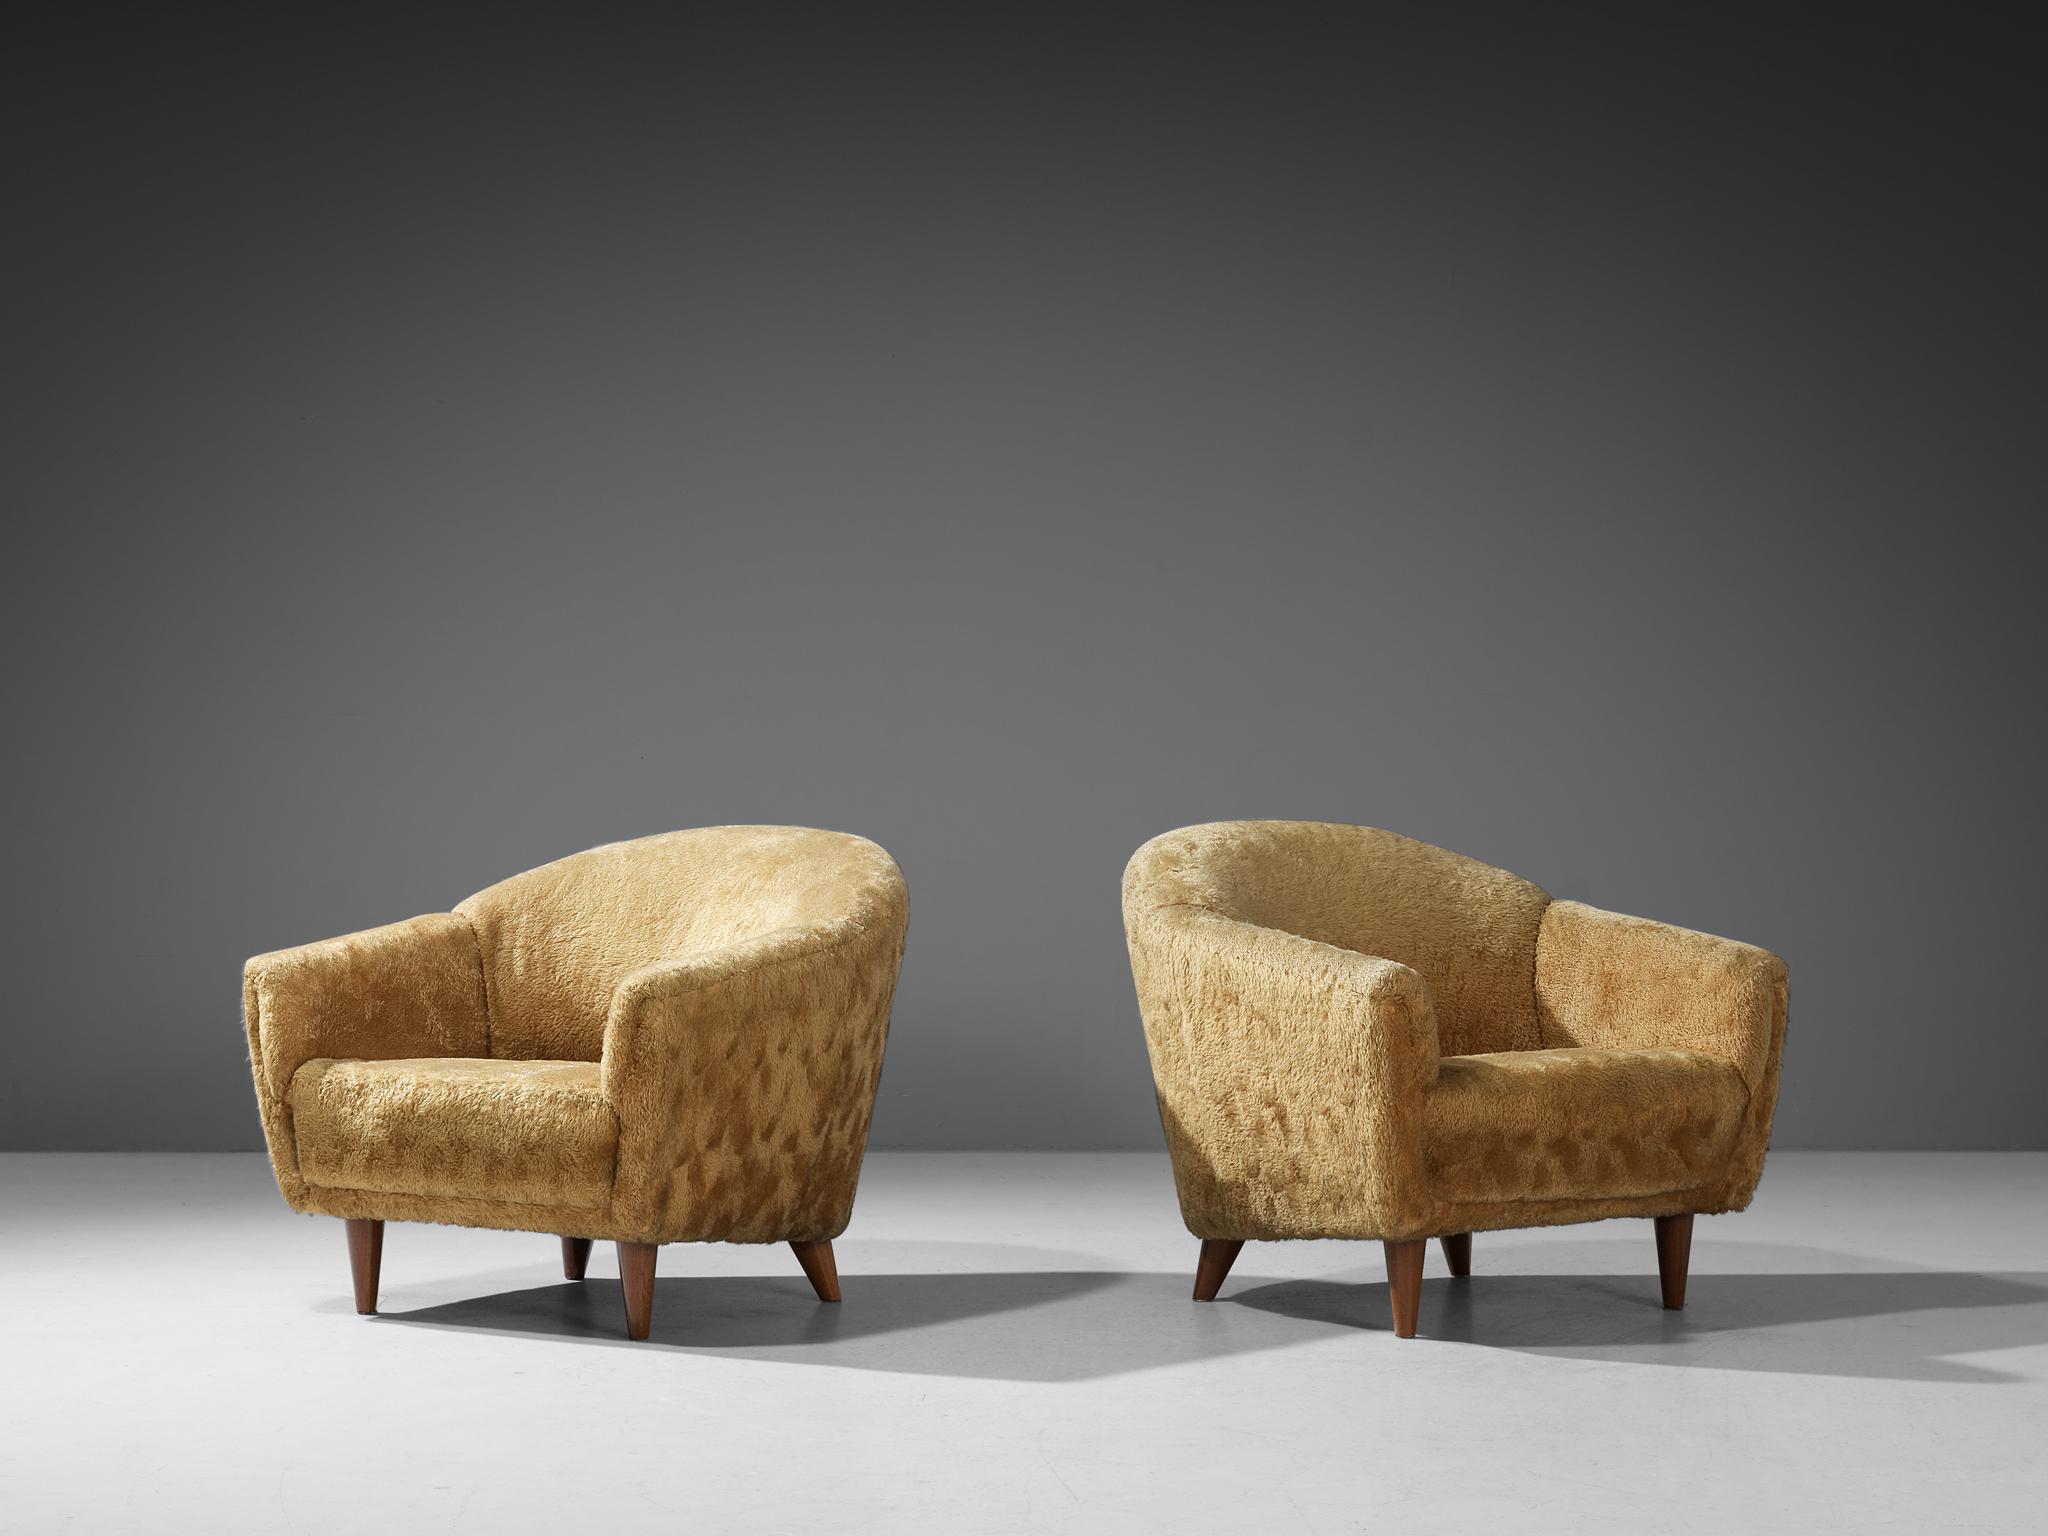 Chaises longues, tapisserie teddy et hêtre, Europe, années 1950

Cette paire de chaises longues volumineuses est dotée de pieds en bois et d'un revêtement en nounours jaune. Les chaises longues sont dotées d'un dossier haut et légèrement incurvé,